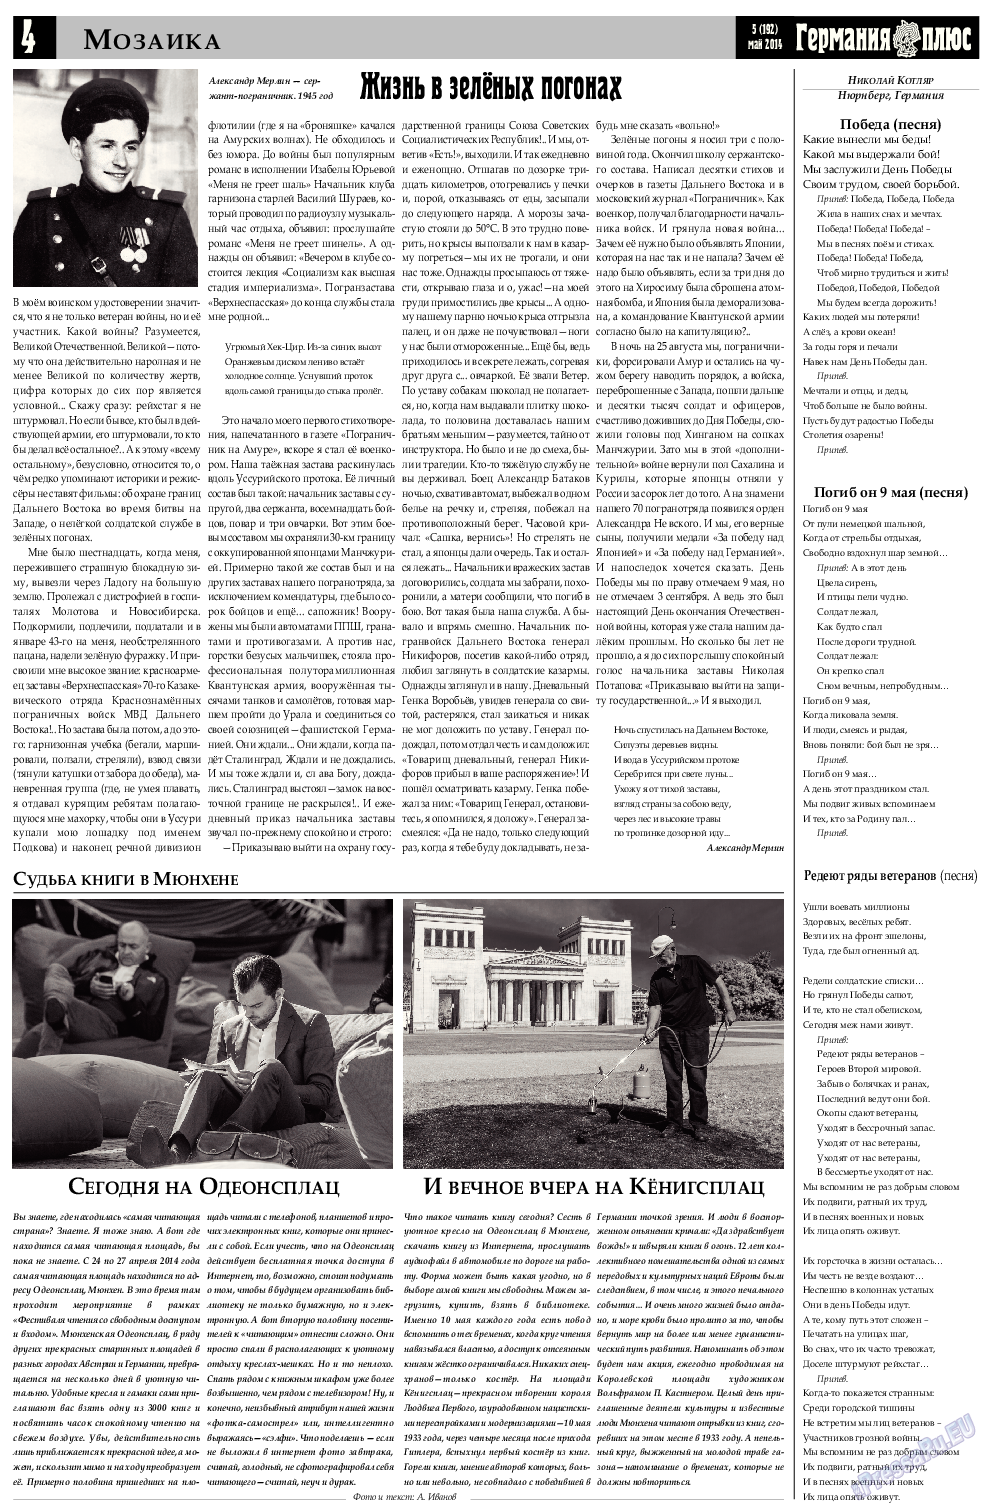 Германия плюс, газета. 2014 №5 стр.4